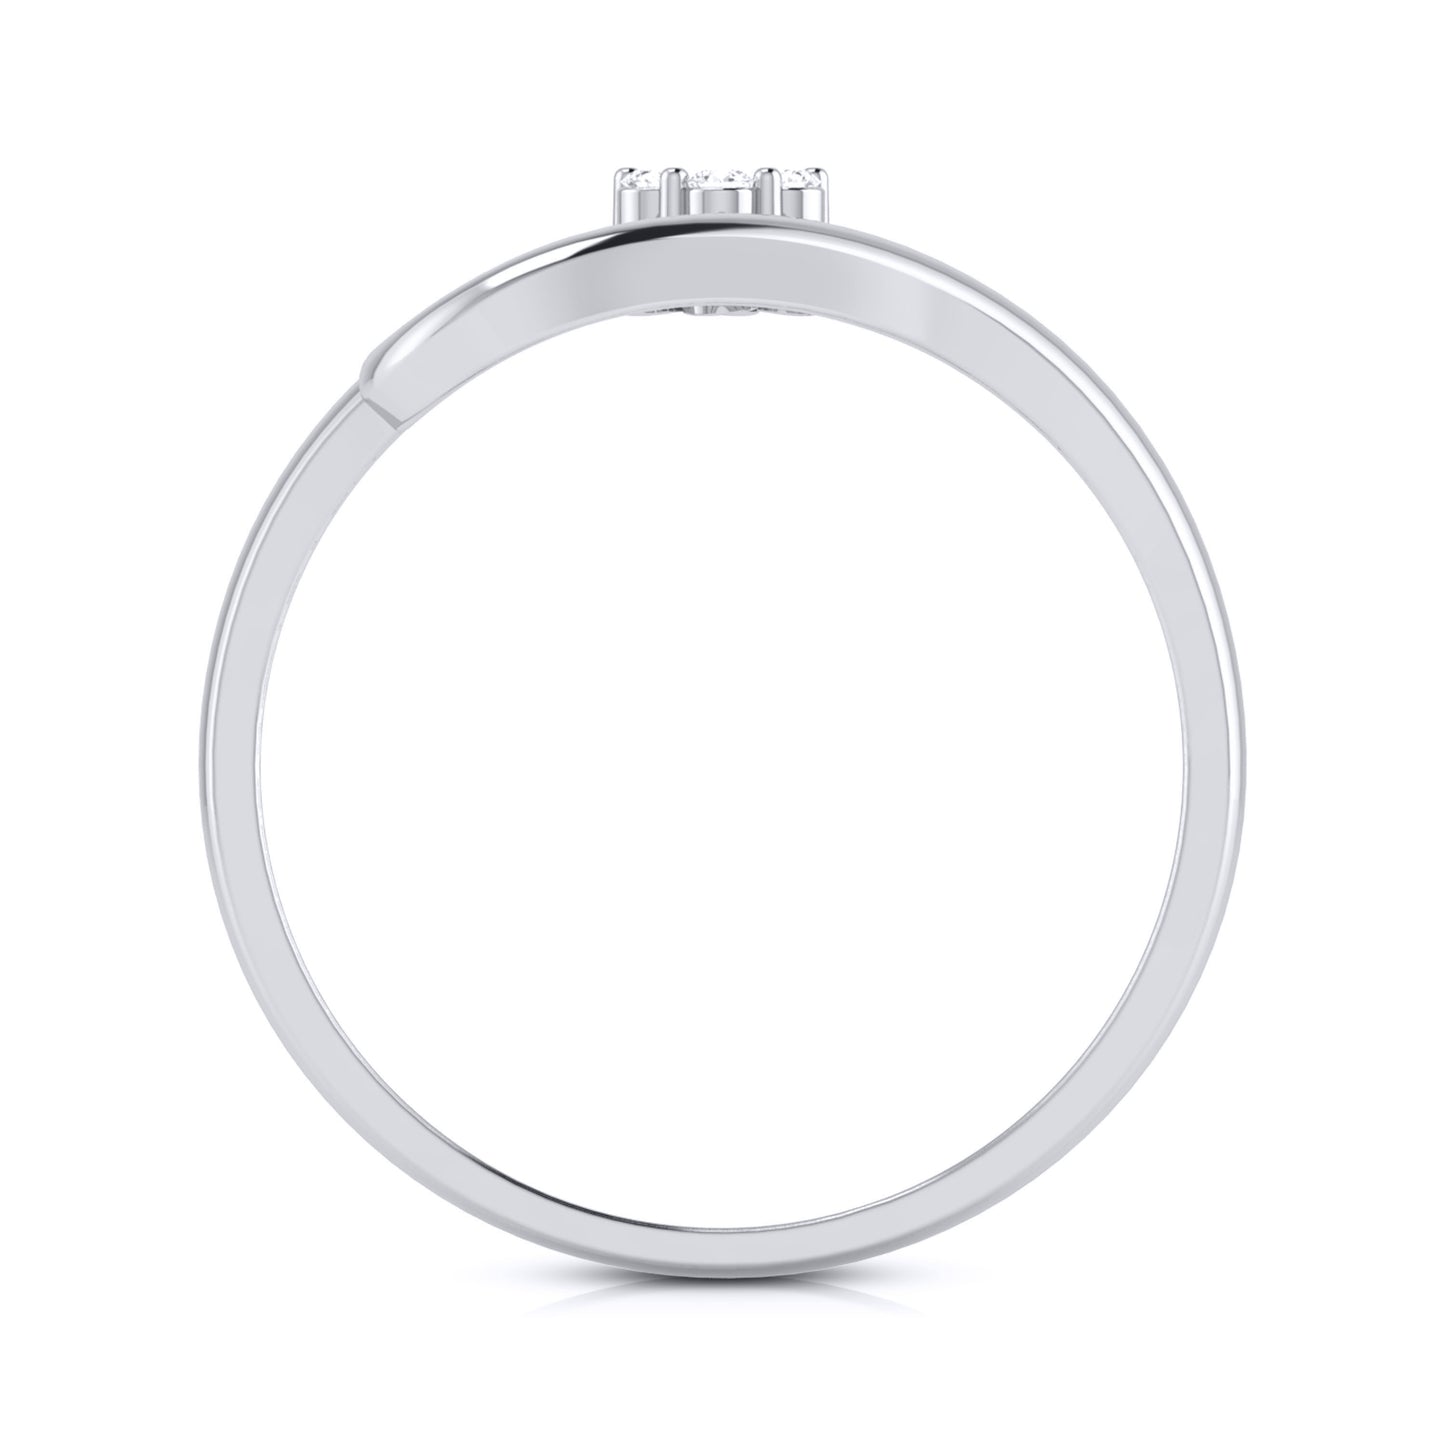 Boho lab grown diamond ring trendy ring design Fiona Diamonds